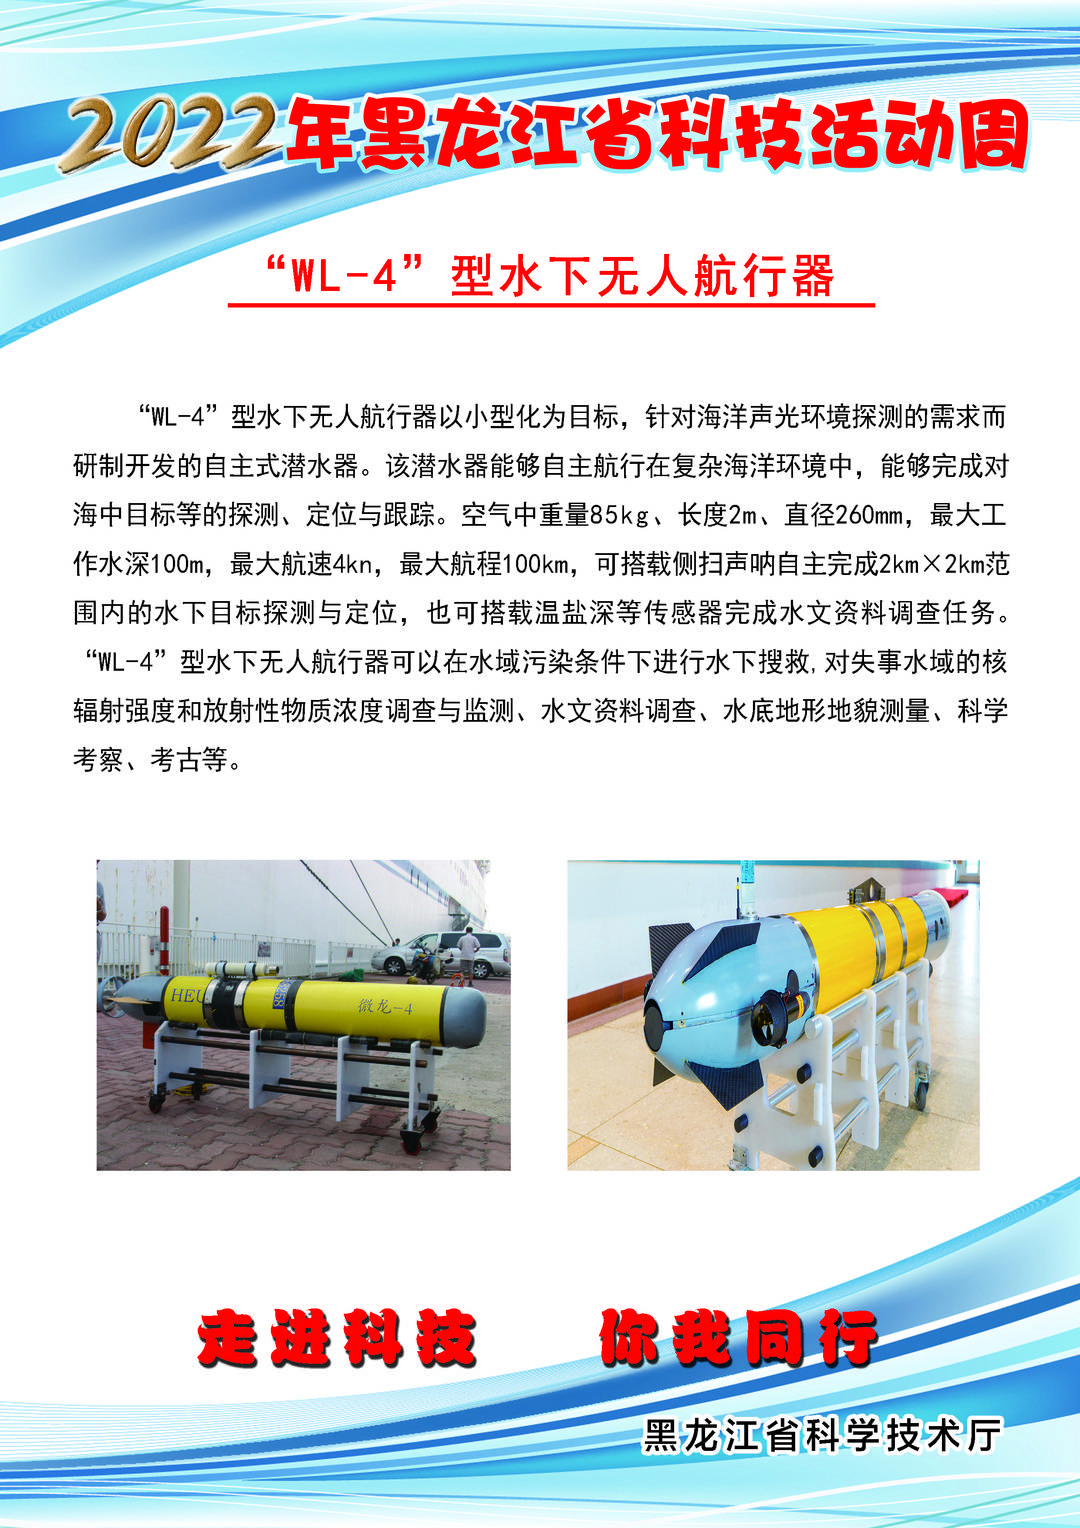 黑龙江省科技创新成果展丨“WL-4”型水下无人航行器